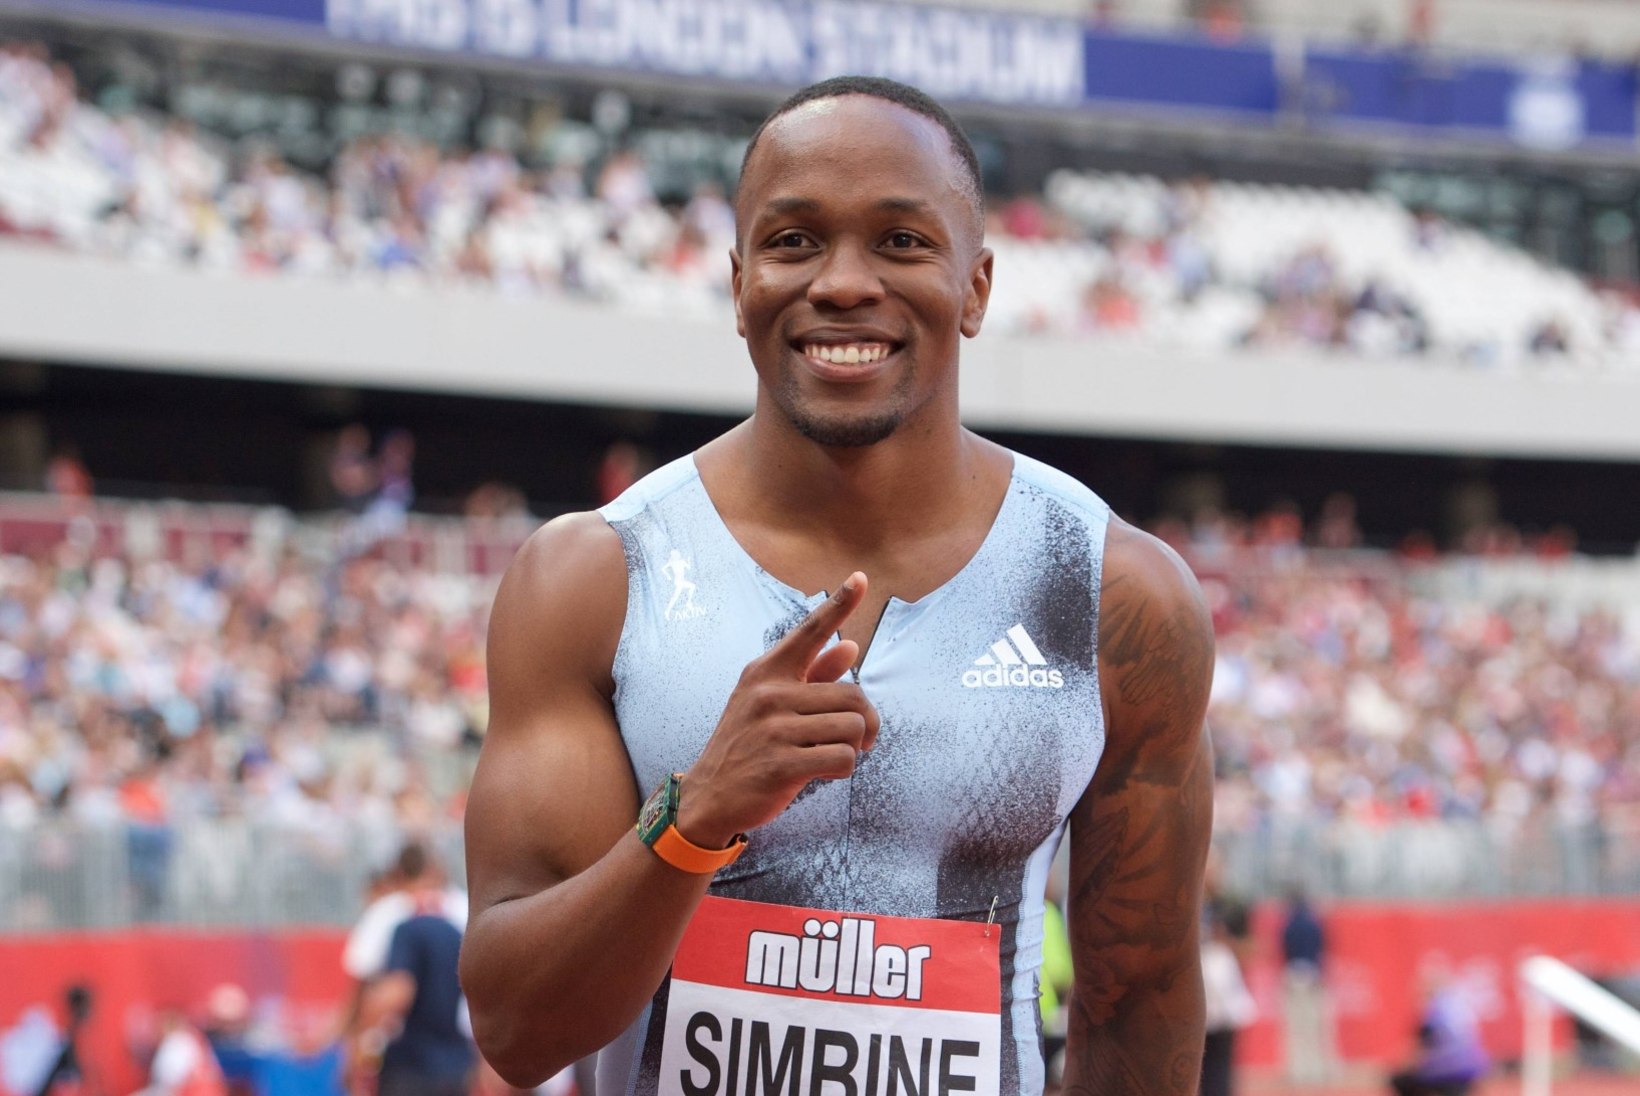 VIDEO | Lõuna-Aafrika sprinter jooksis 100 meetri distantsil välja võimsa aja